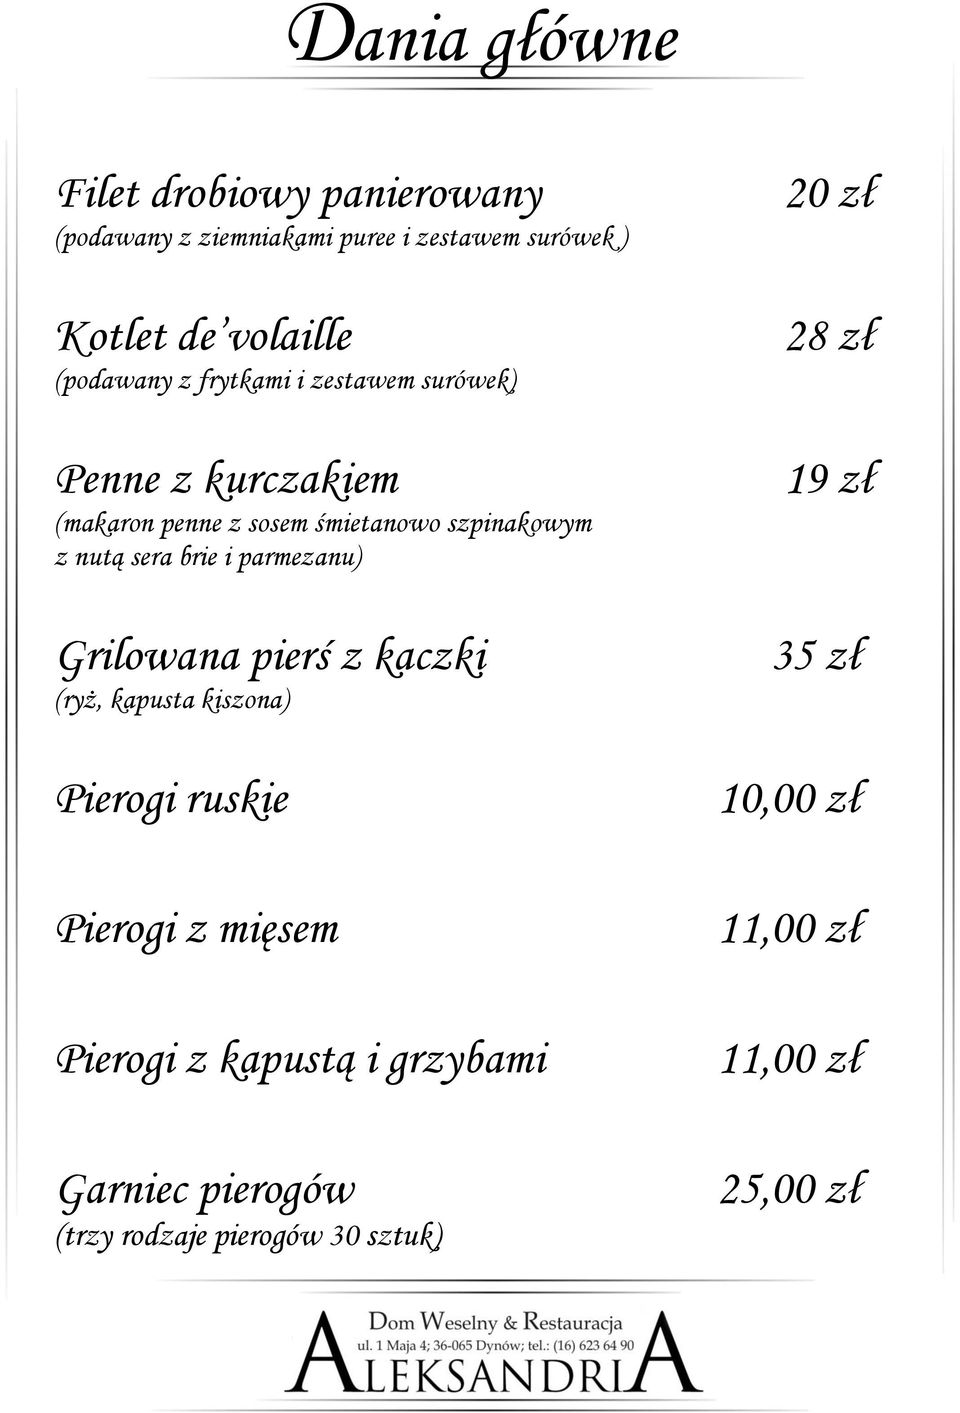 sera brie i parmezanu) Grilowana pierś z kaczki (ryż, kapusta kiszona) Pierogi ruskie Pierogi z mięsem Pierogi z